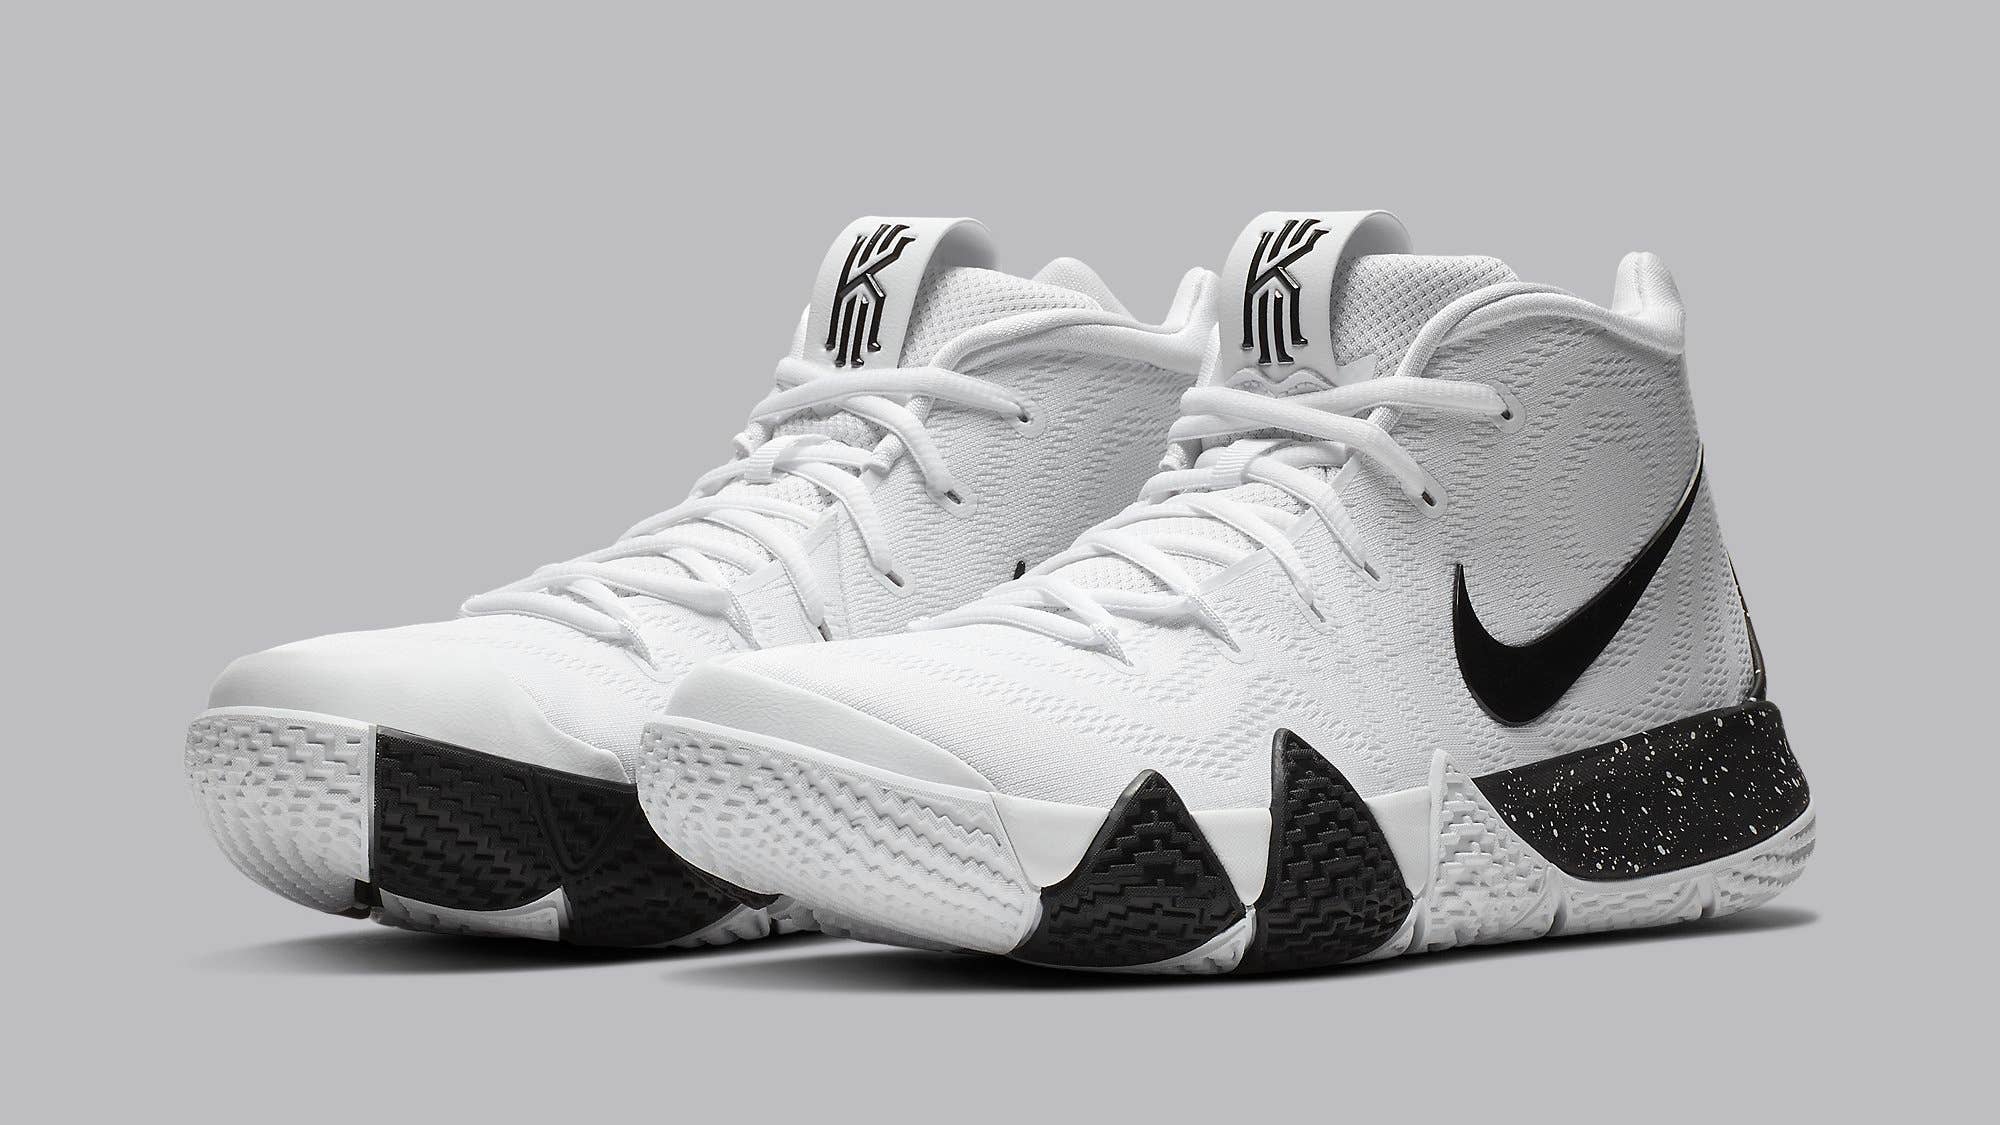 Nike Kyrie 4 White Black Release Date AV2296 100 Pair